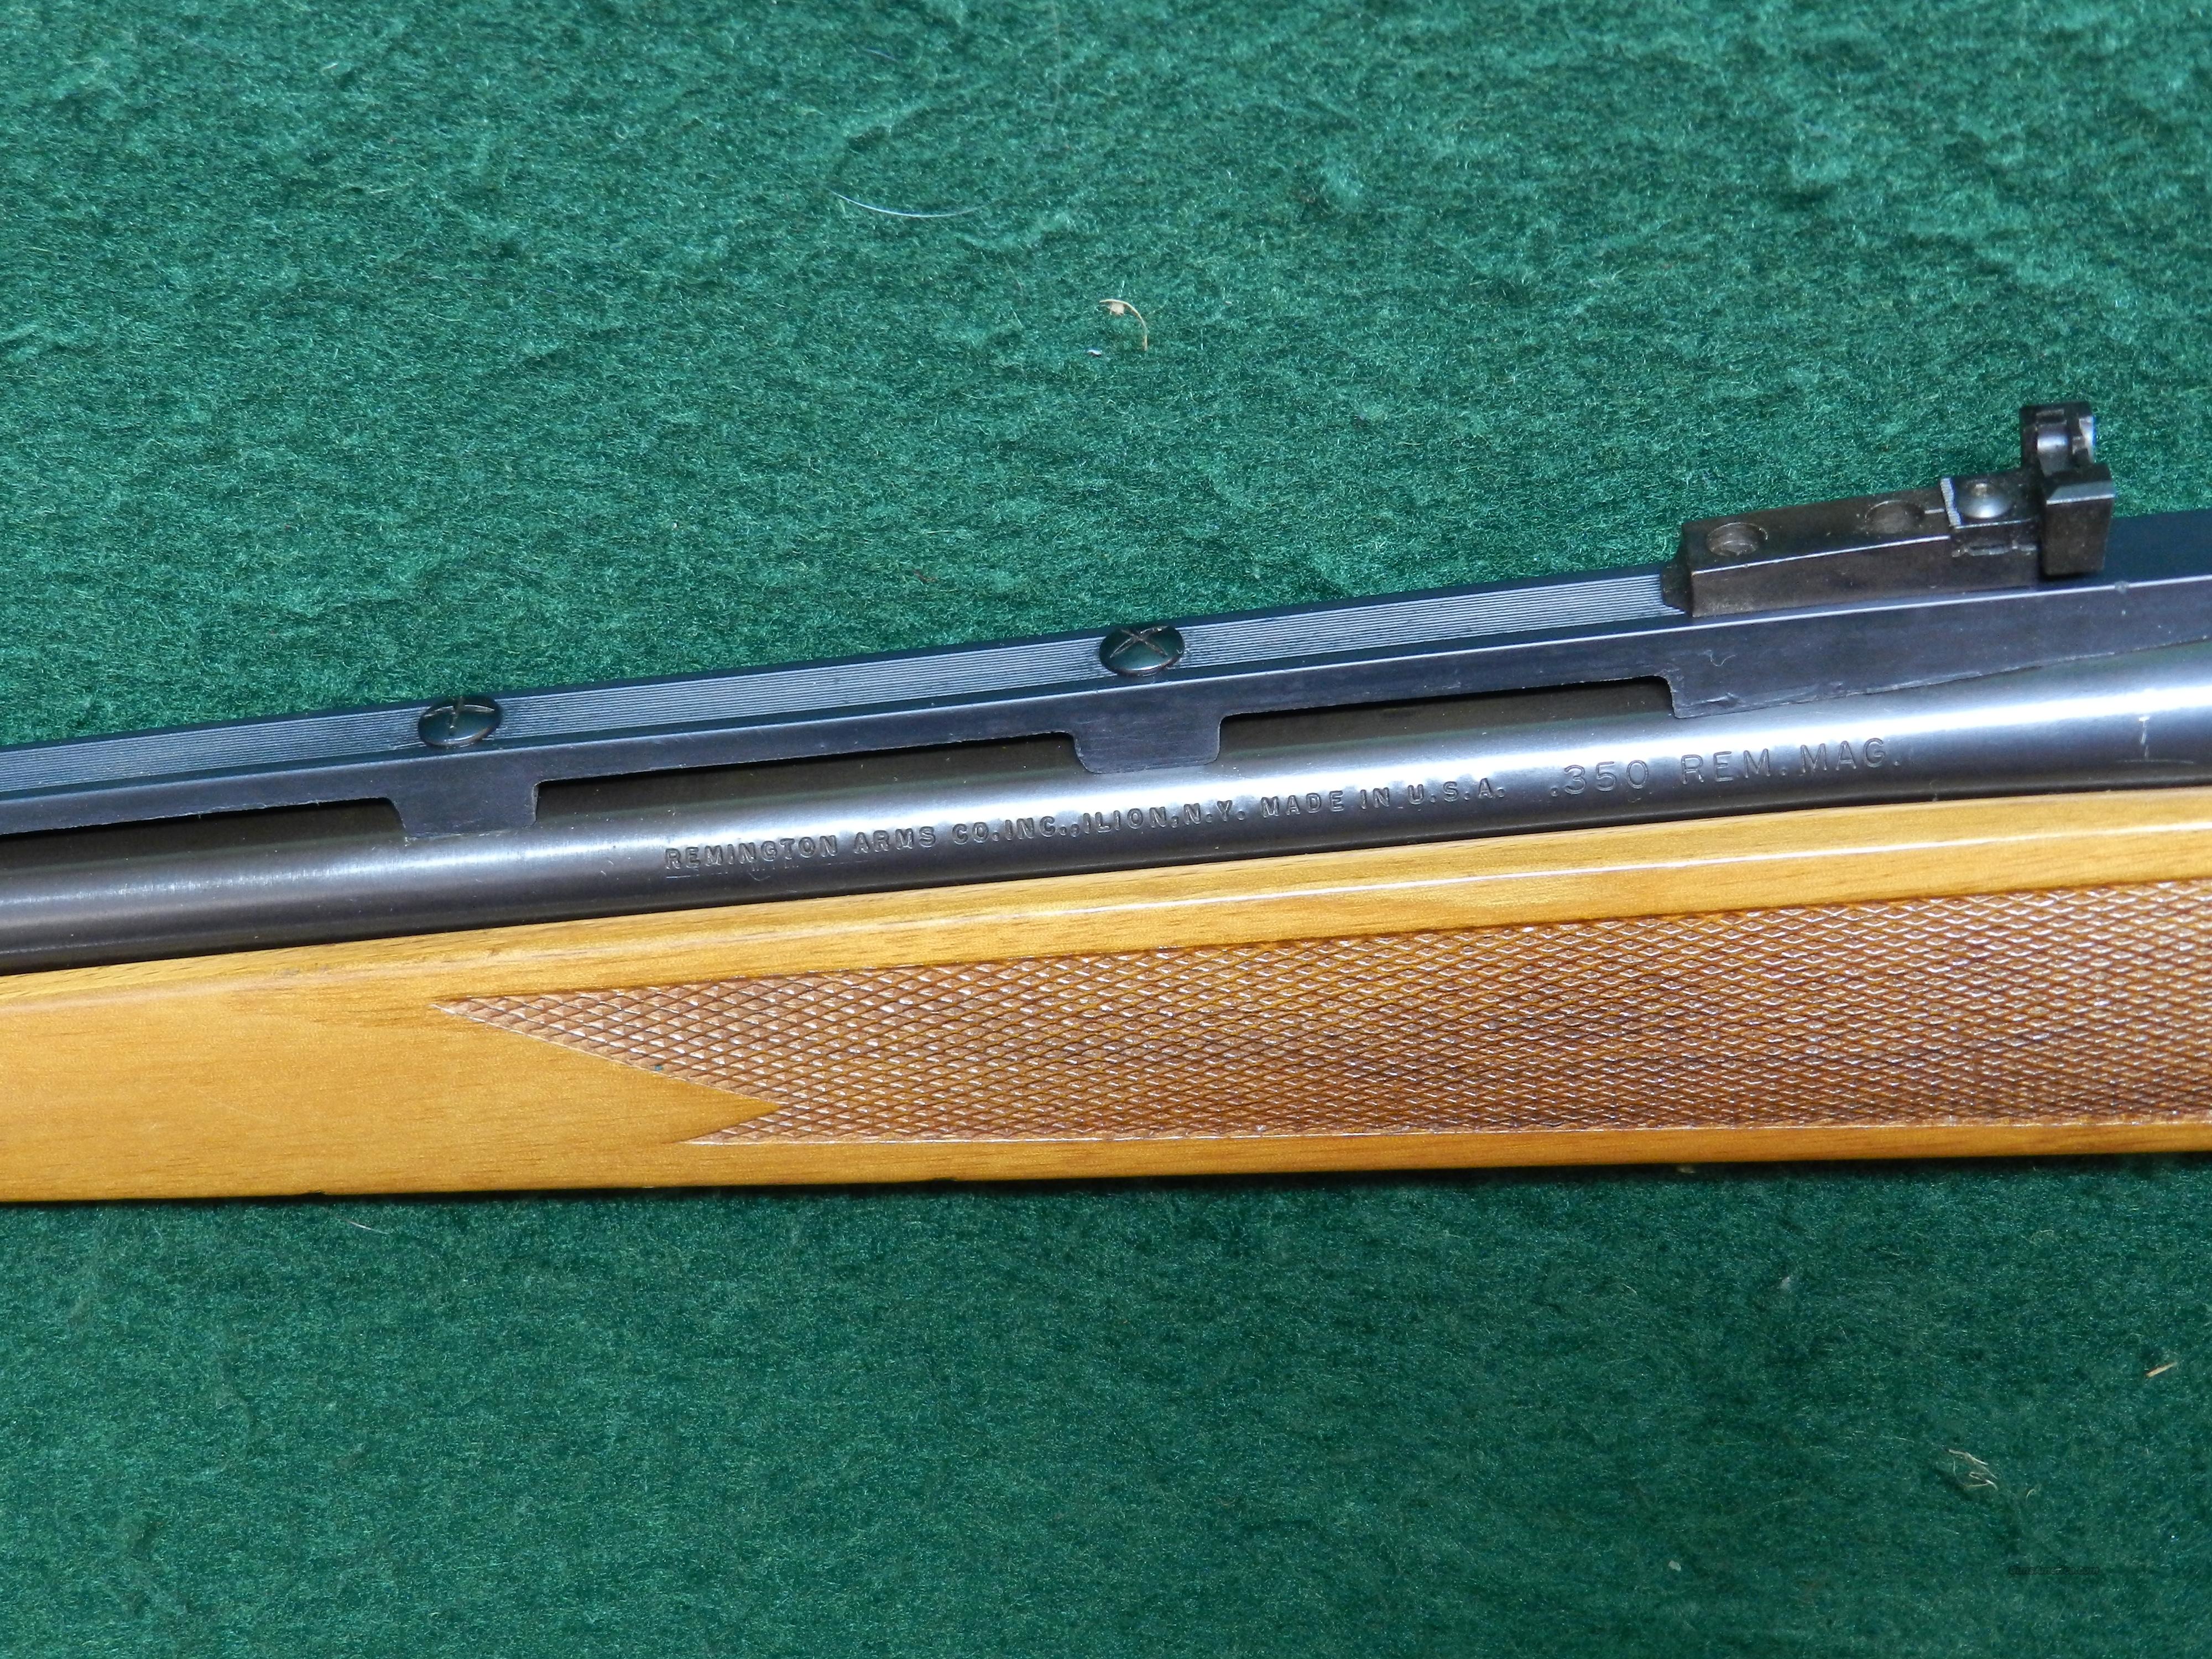 remington 490 parts